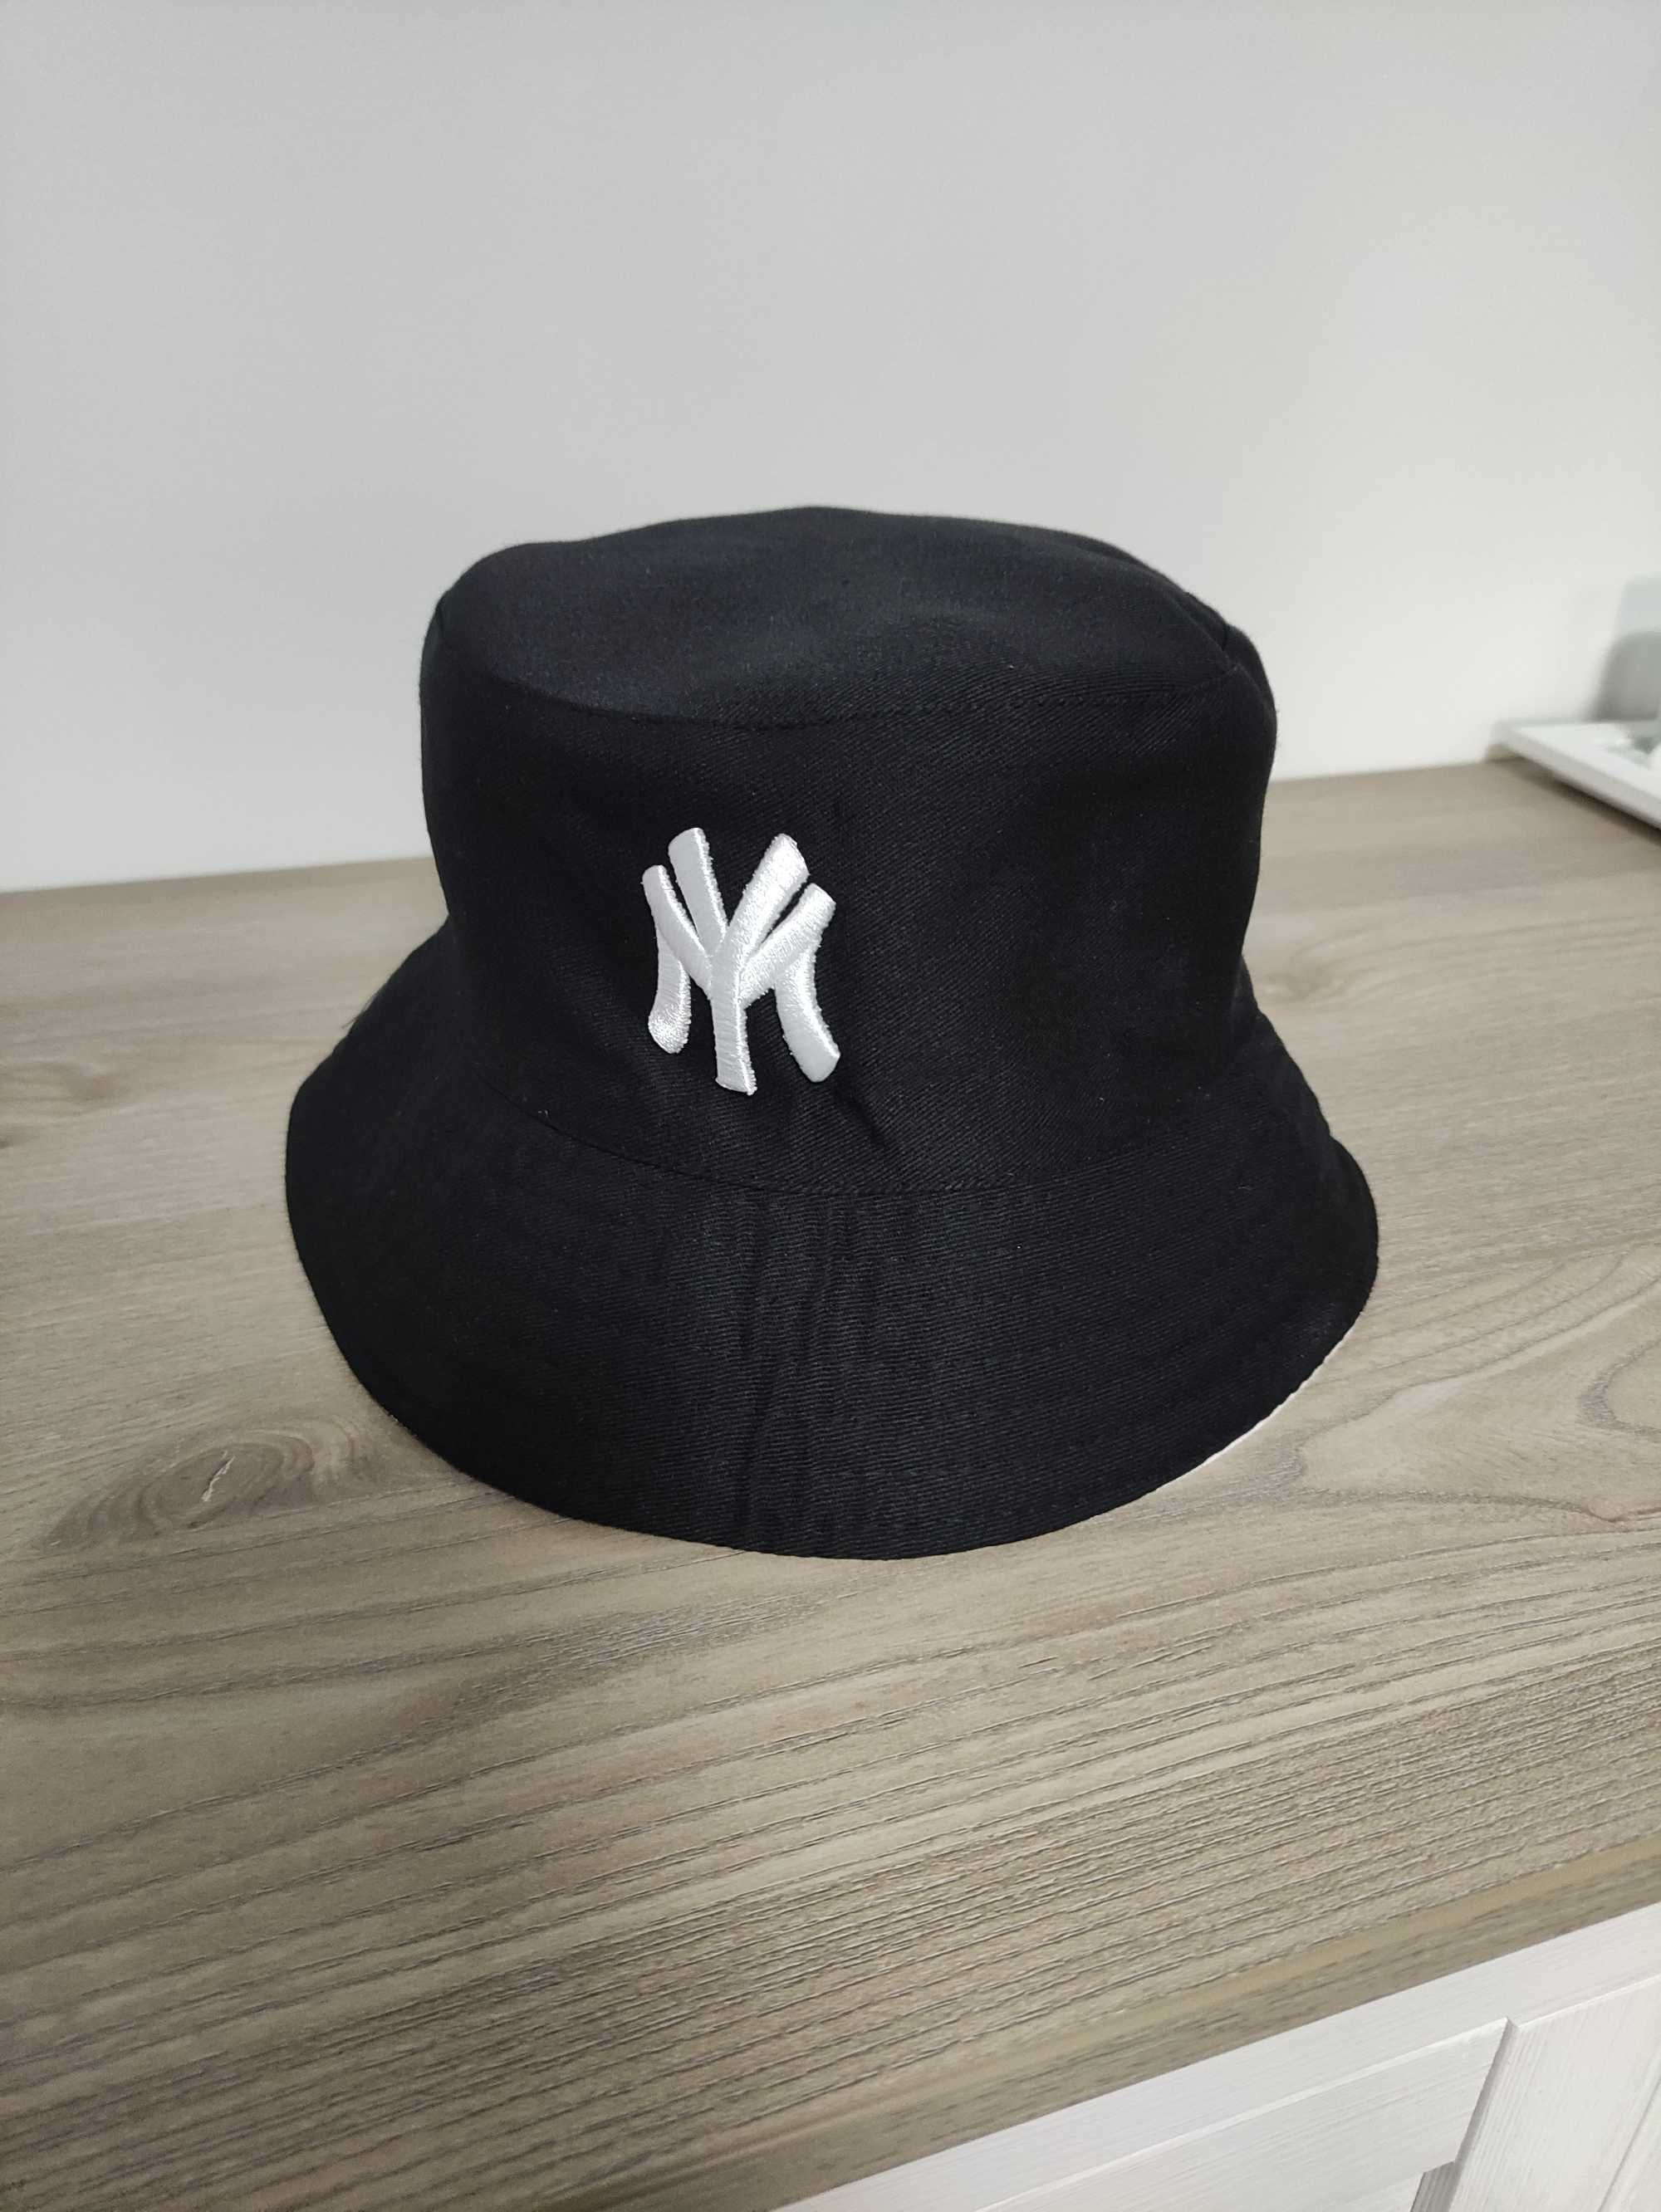 nowa dwustronna czapka kapelusz młodzieżowa NY jk new era czarna biała